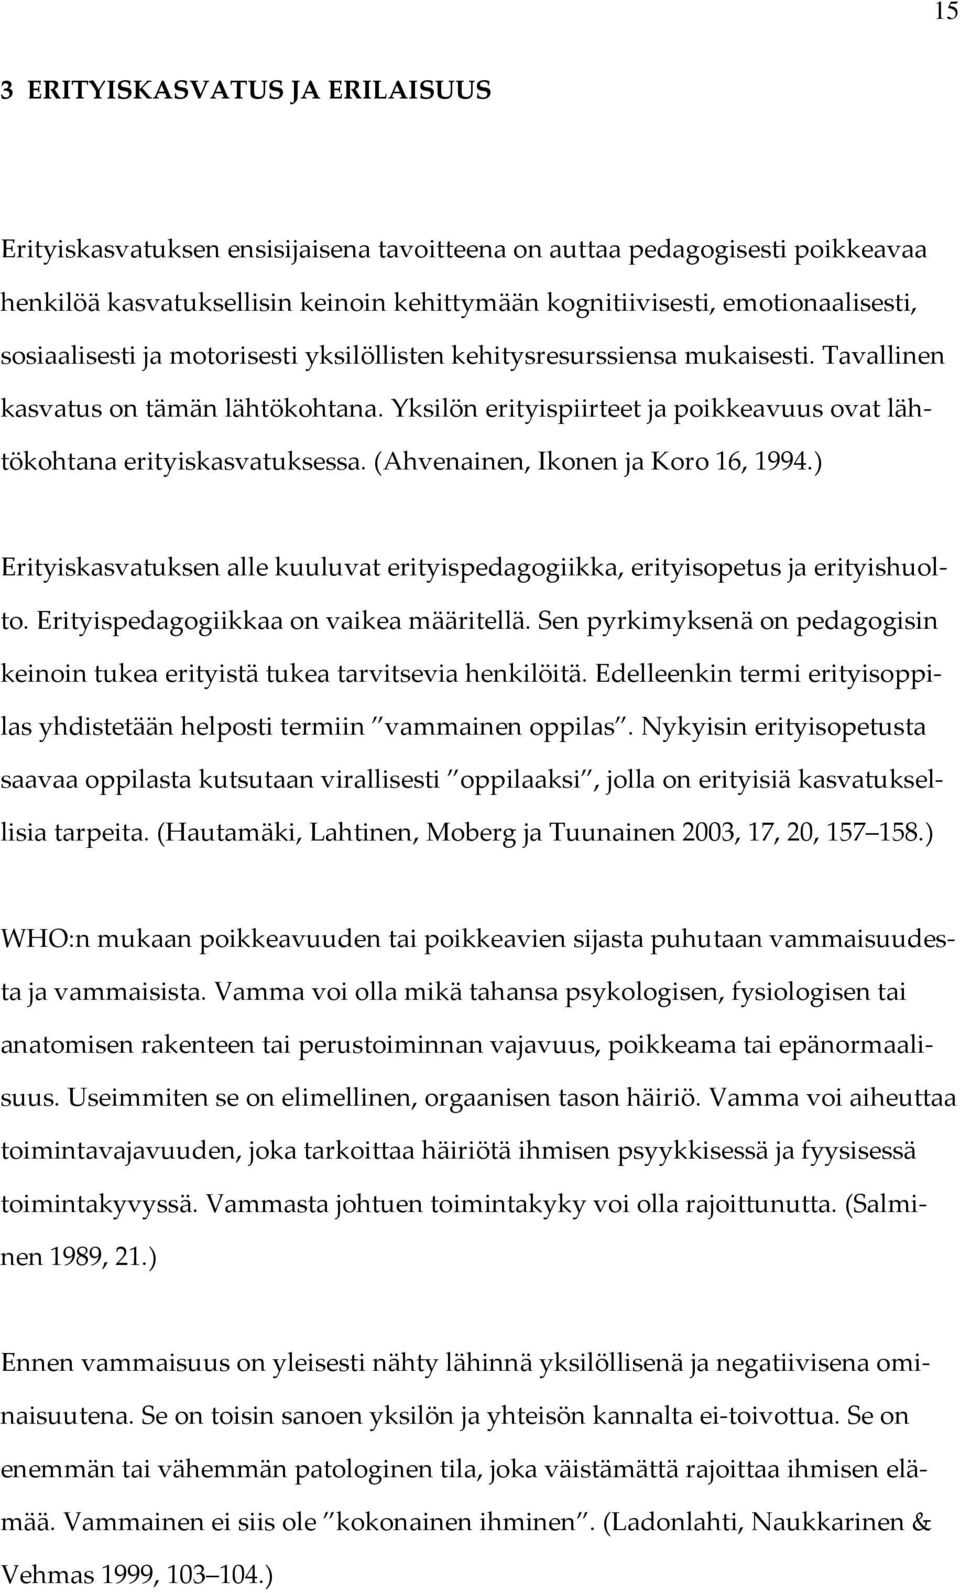 (Ahvenainen, Ikonen ja Koro 16, 1994.) Erityiskasvatuksen alle kuuluvat erityispedagogiikka, erityisopetus ja erityishuolto. Erityispedagogiikkaa on vaikea määritellä.